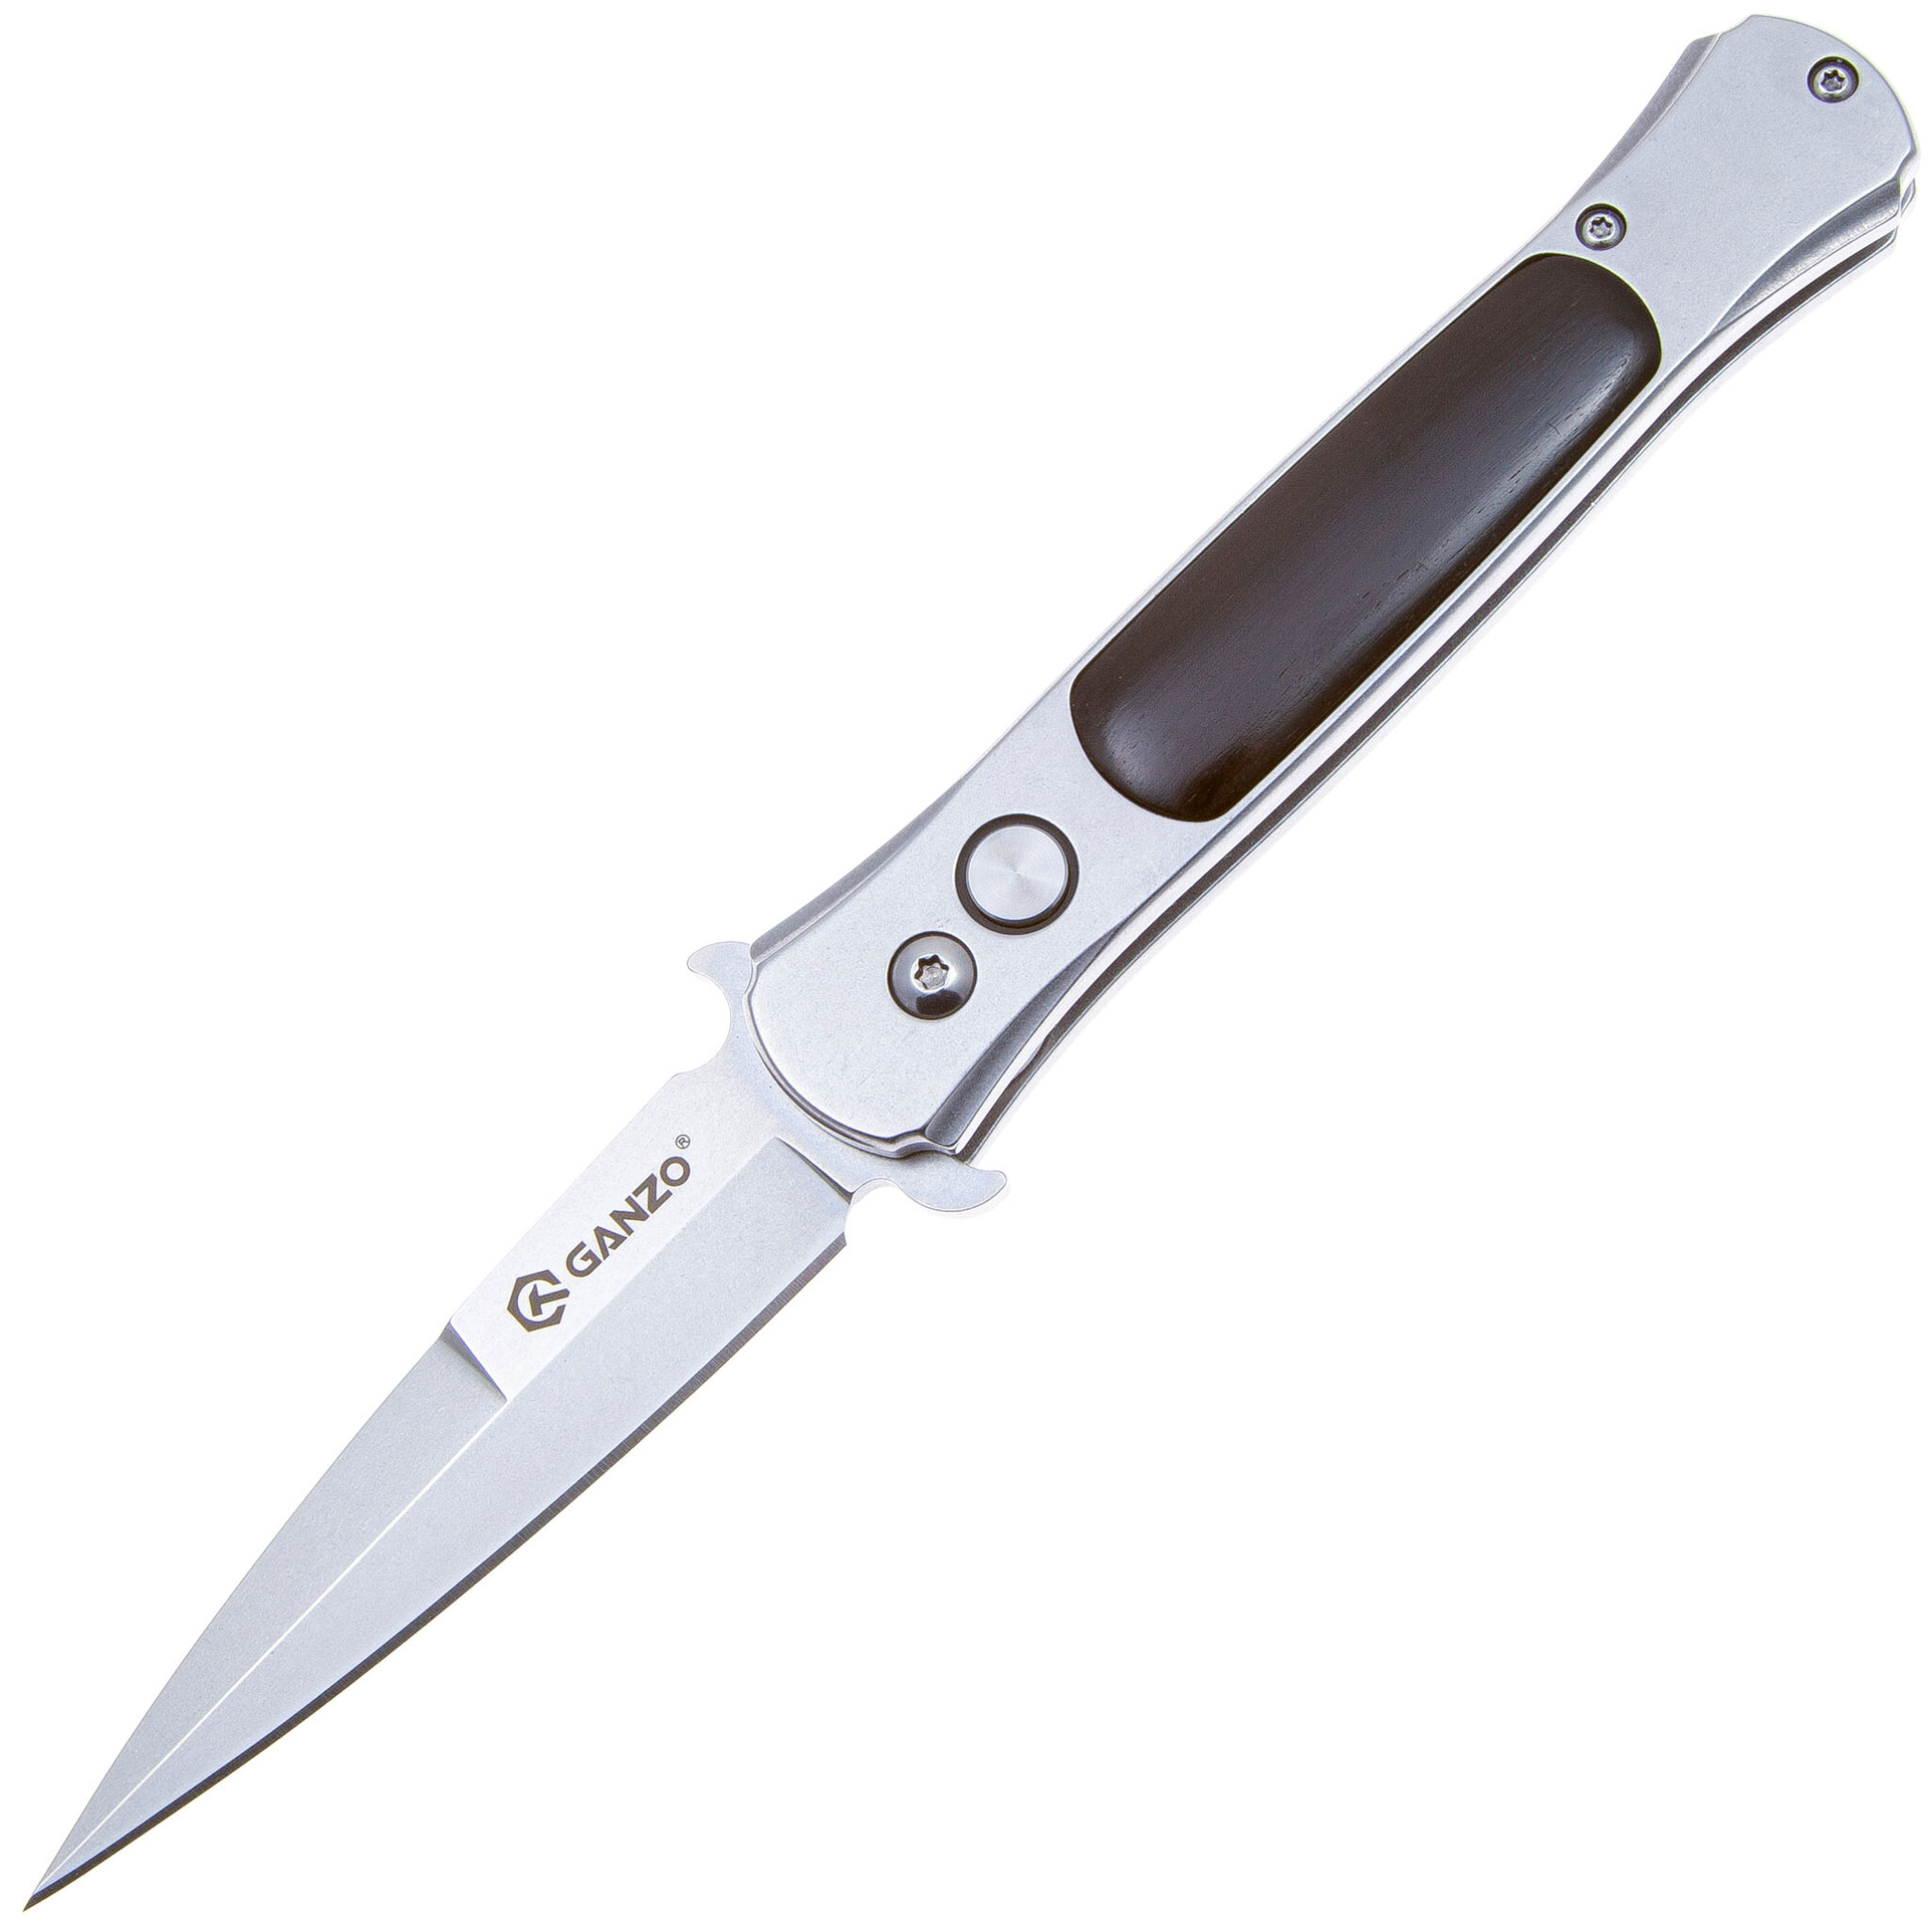 Нож автоматический Ganzo G707 (F707) Дон Корлеоне, Бренды, Ganzo